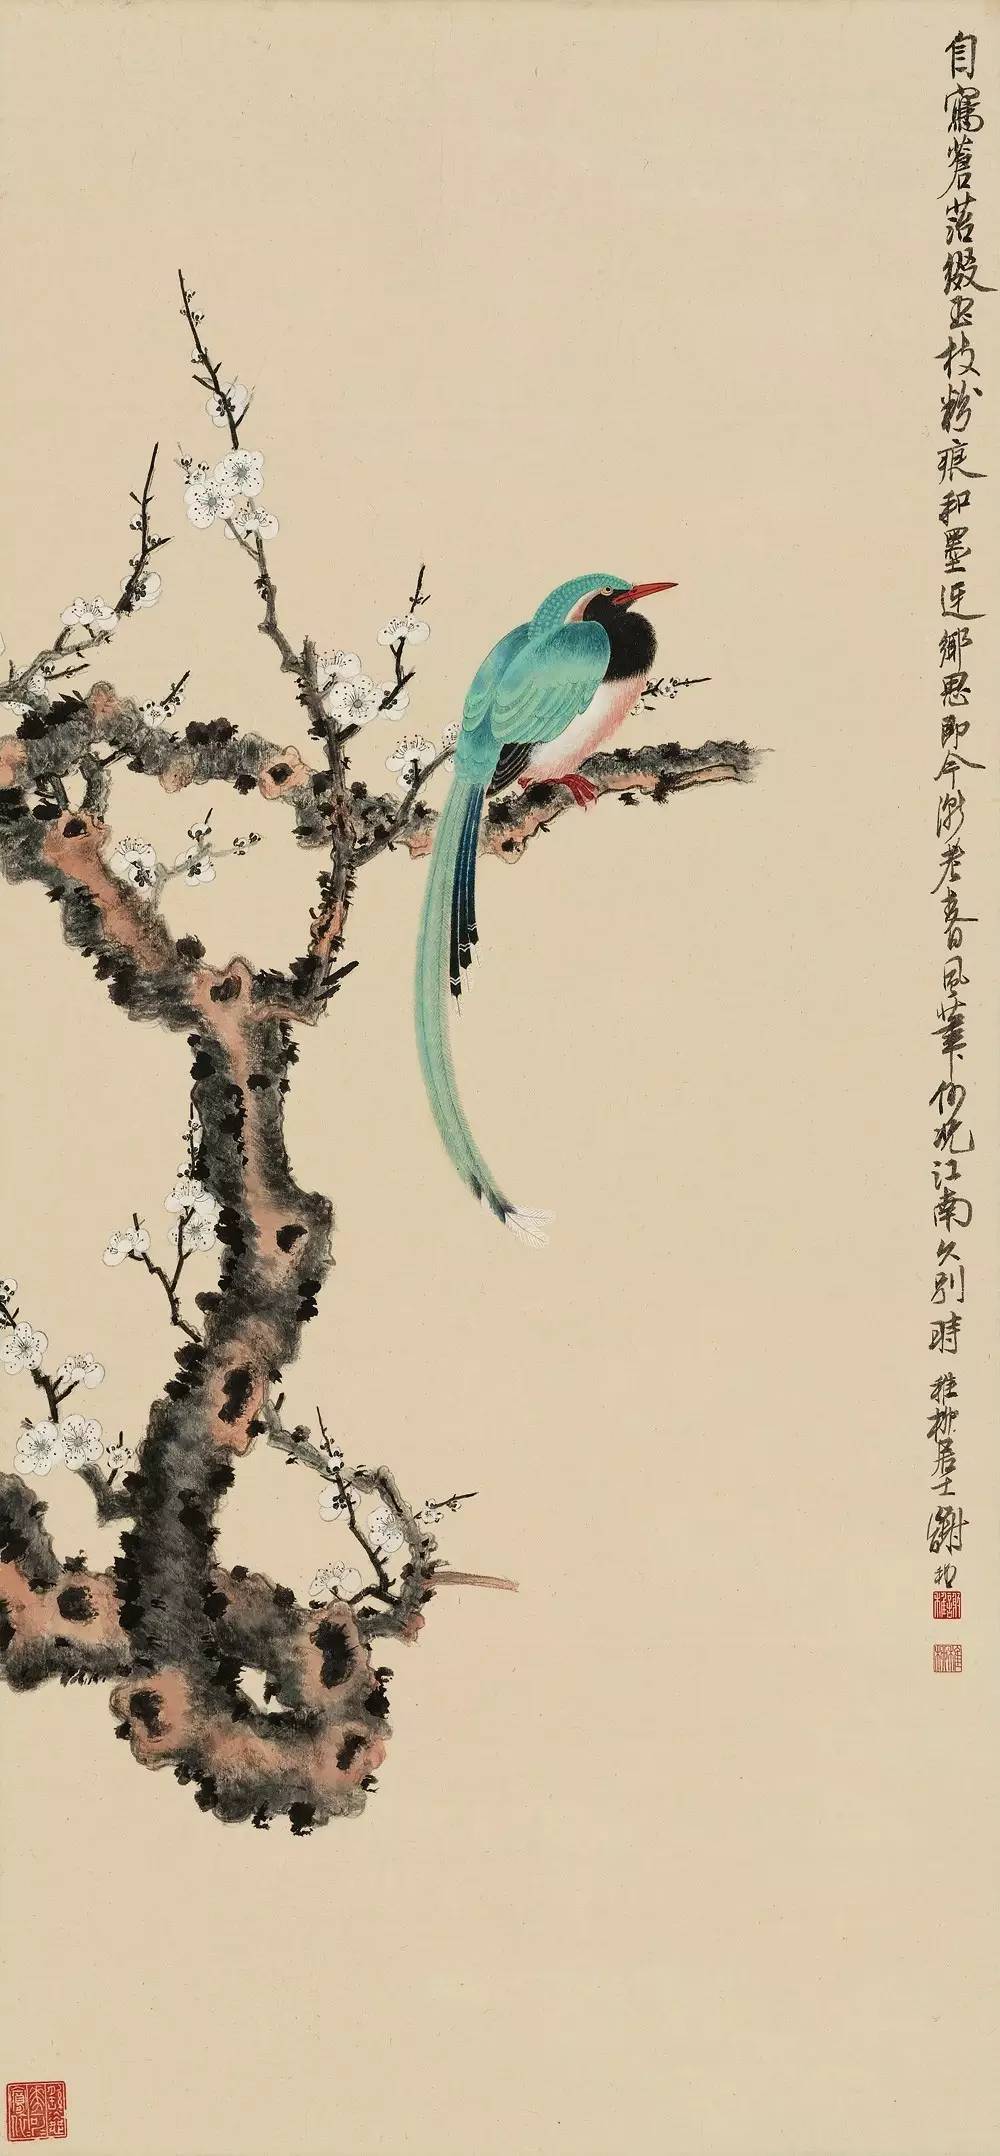 艺术 正文  早期的谢稚柳绘画多用工笔细写描绘江南烟雨景色,但以花鸟